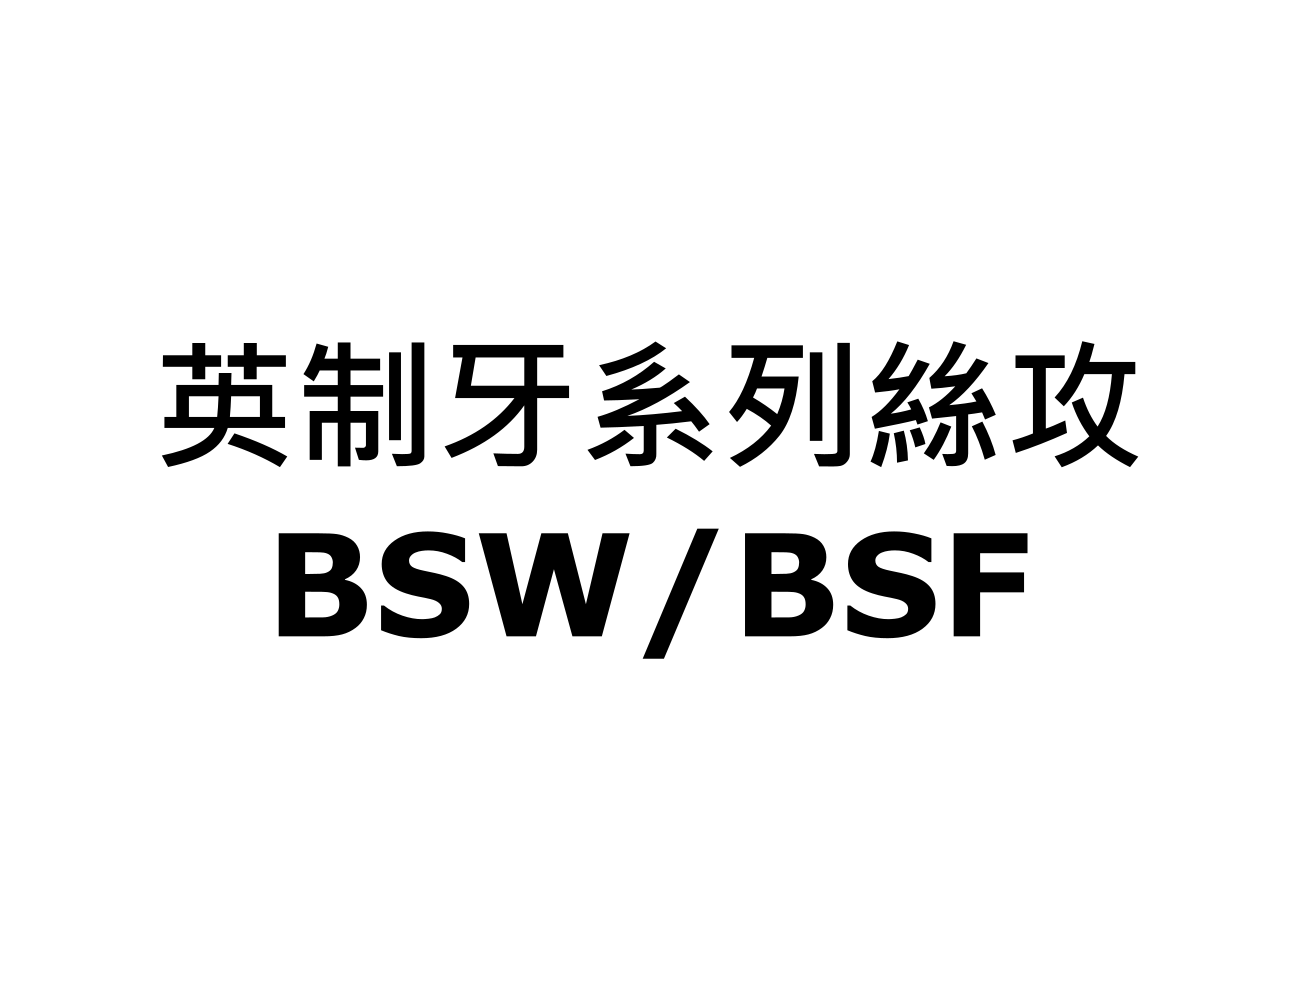 英制牙系列絲攻 BSW/BSF